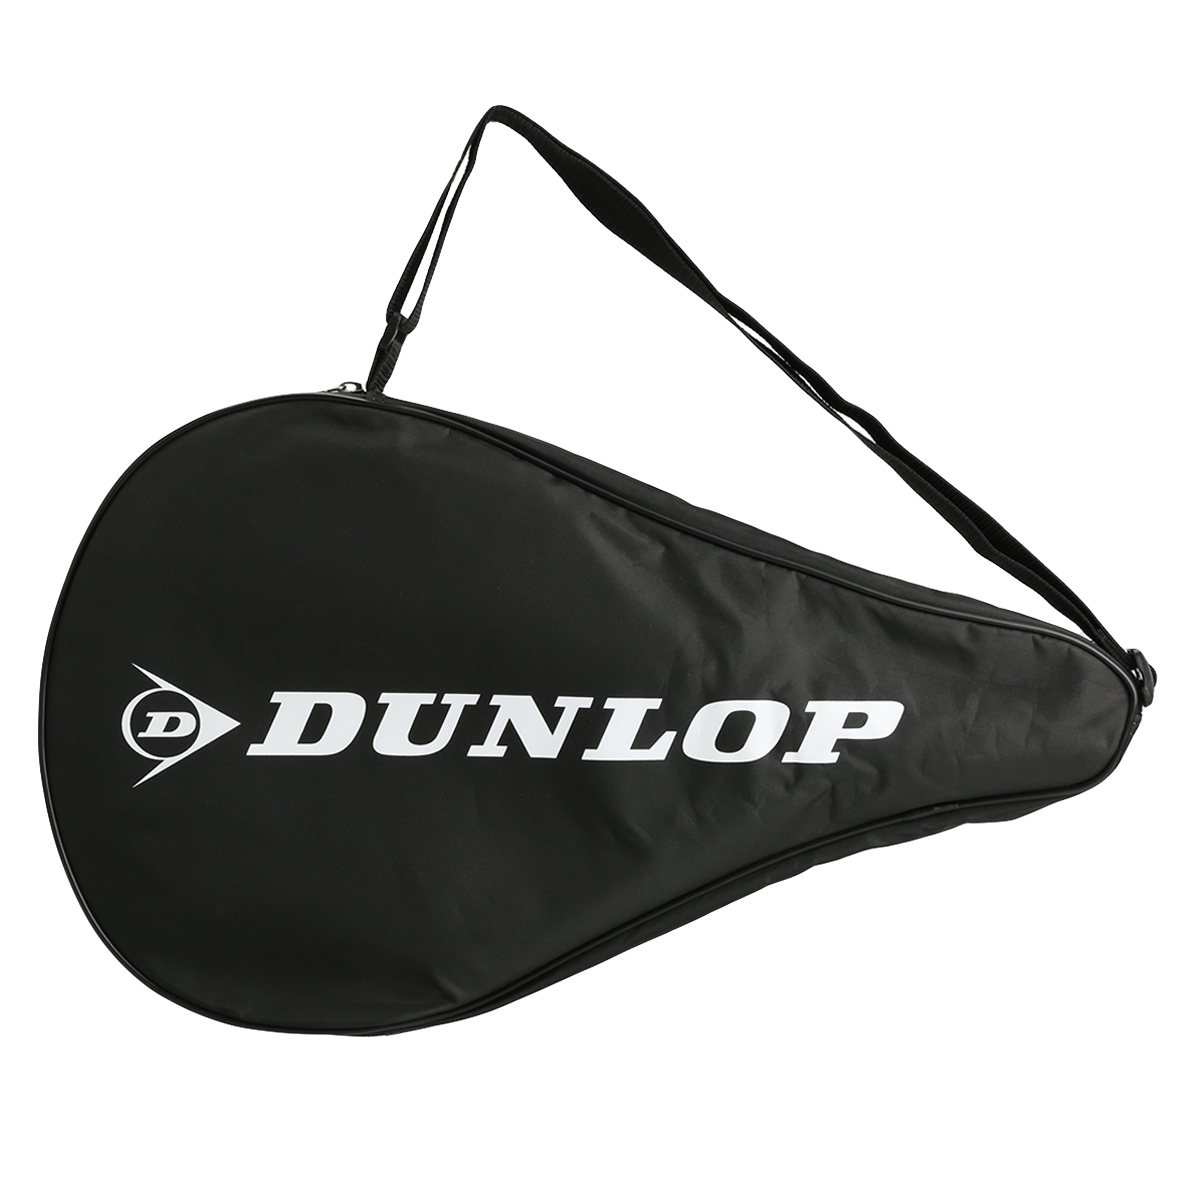 Paleta Dunlop Padel Inferno,  image number null